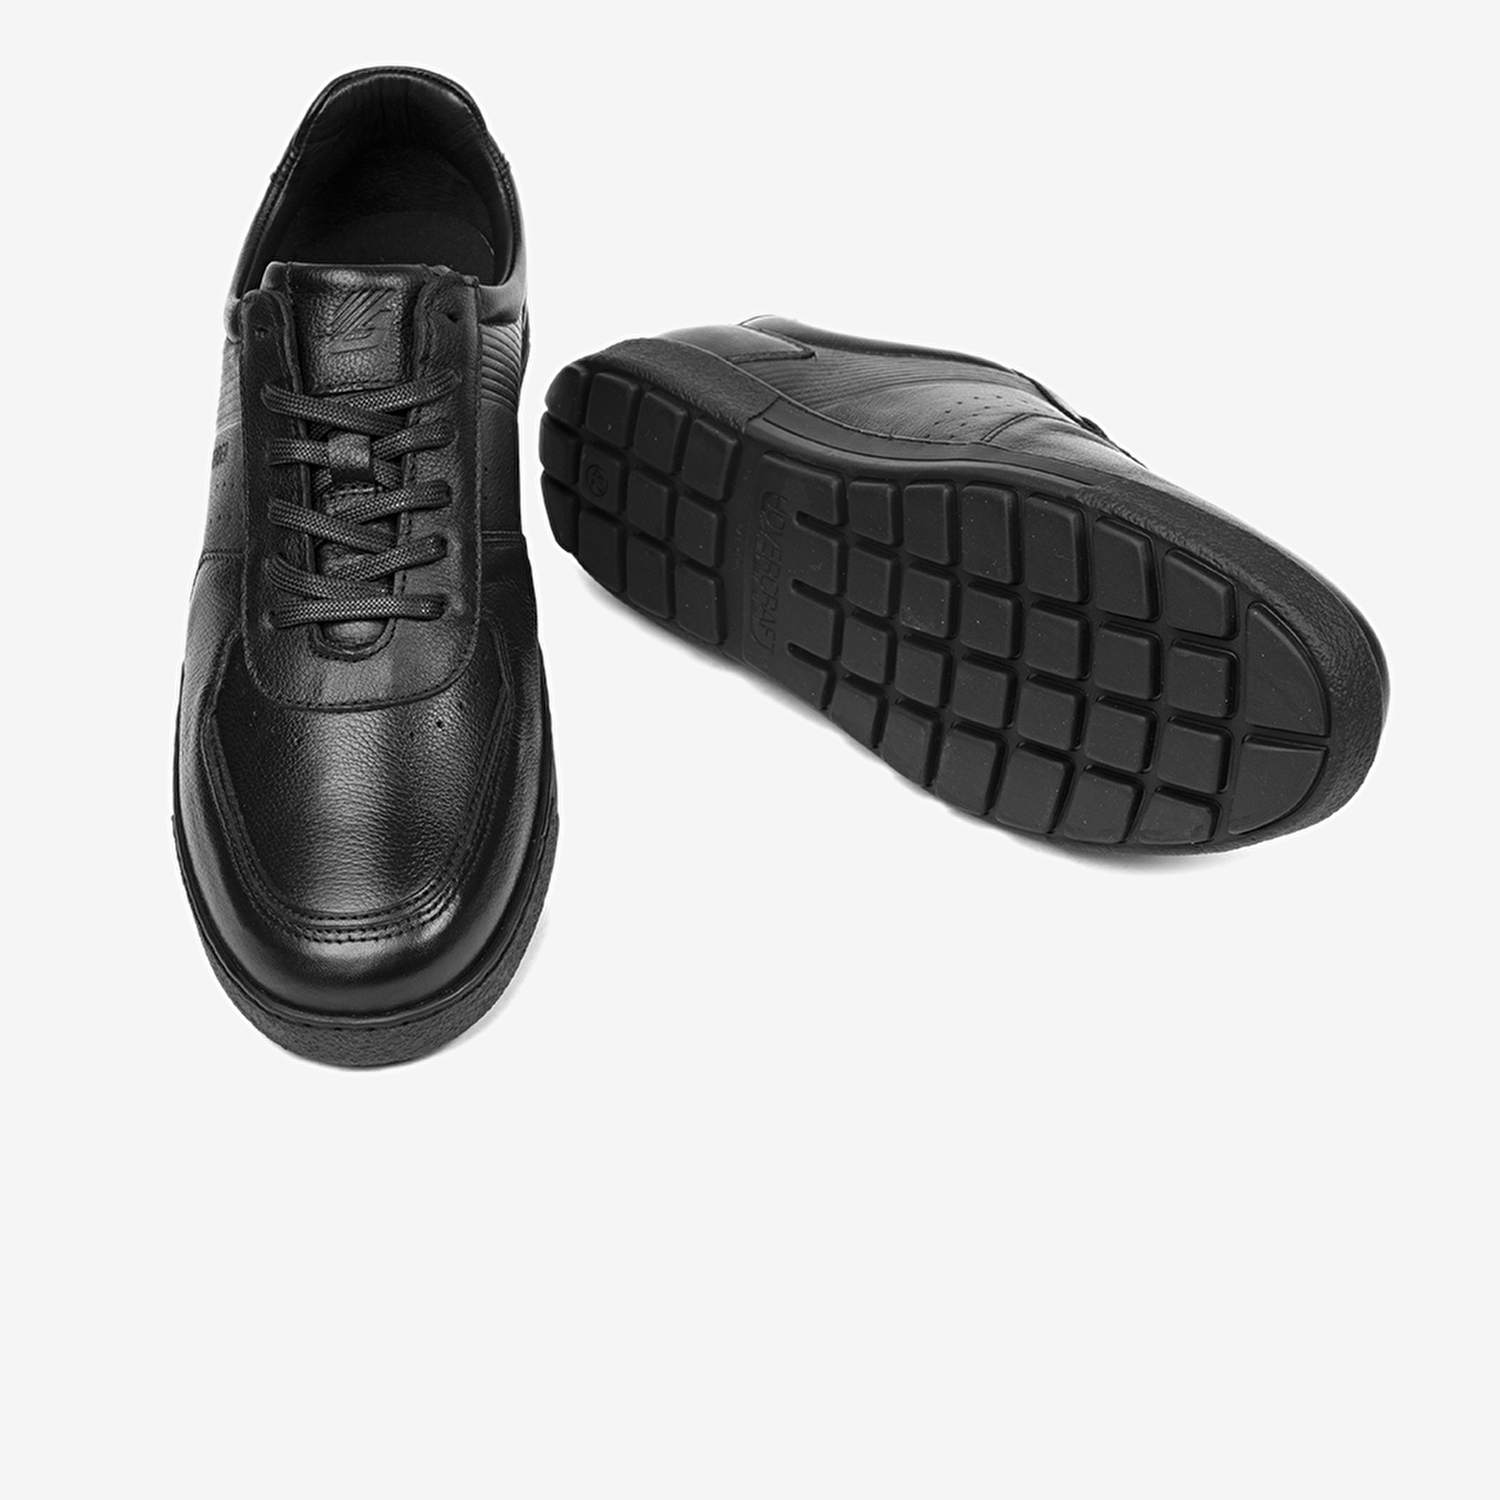 Erkek Siyah Hakiki Deri Comfort Ayakkabı 4Y1HA00124-6